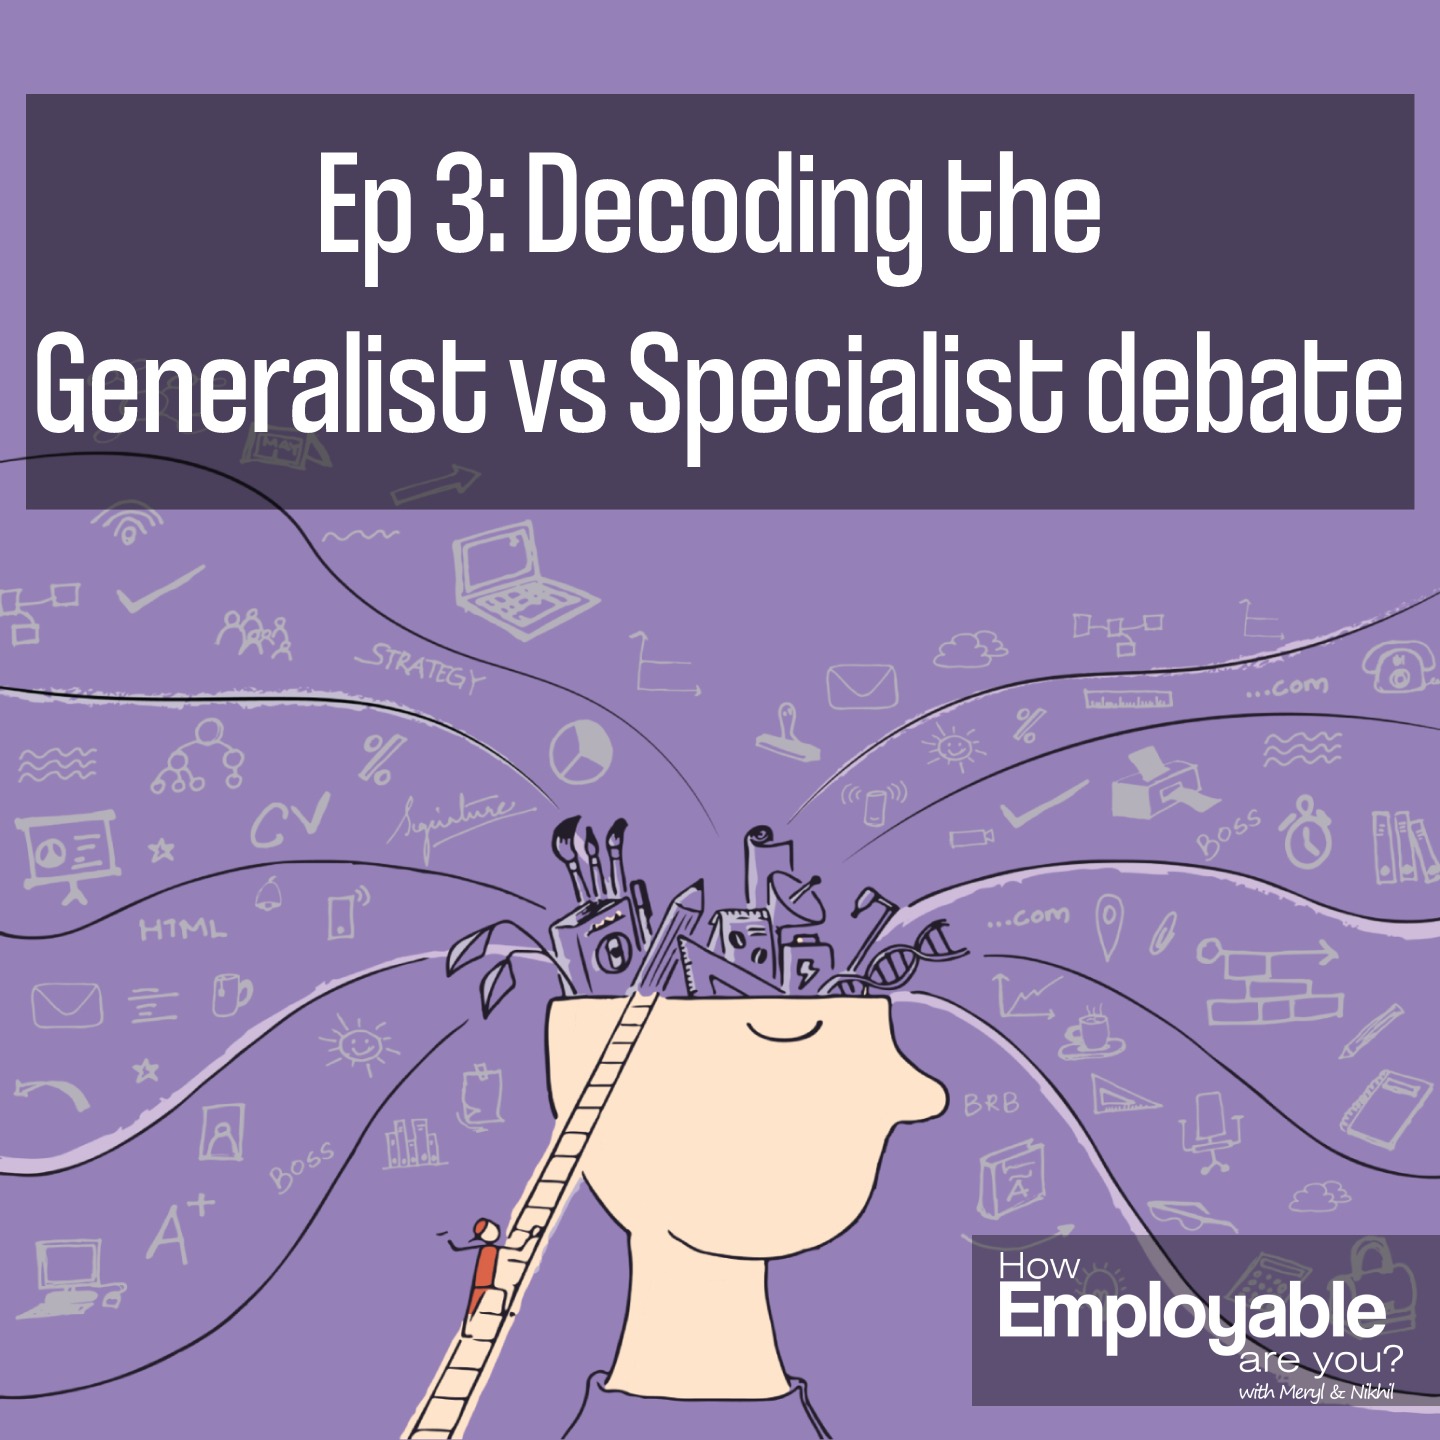 E3: Decoding the Generalist vs Specialist debate